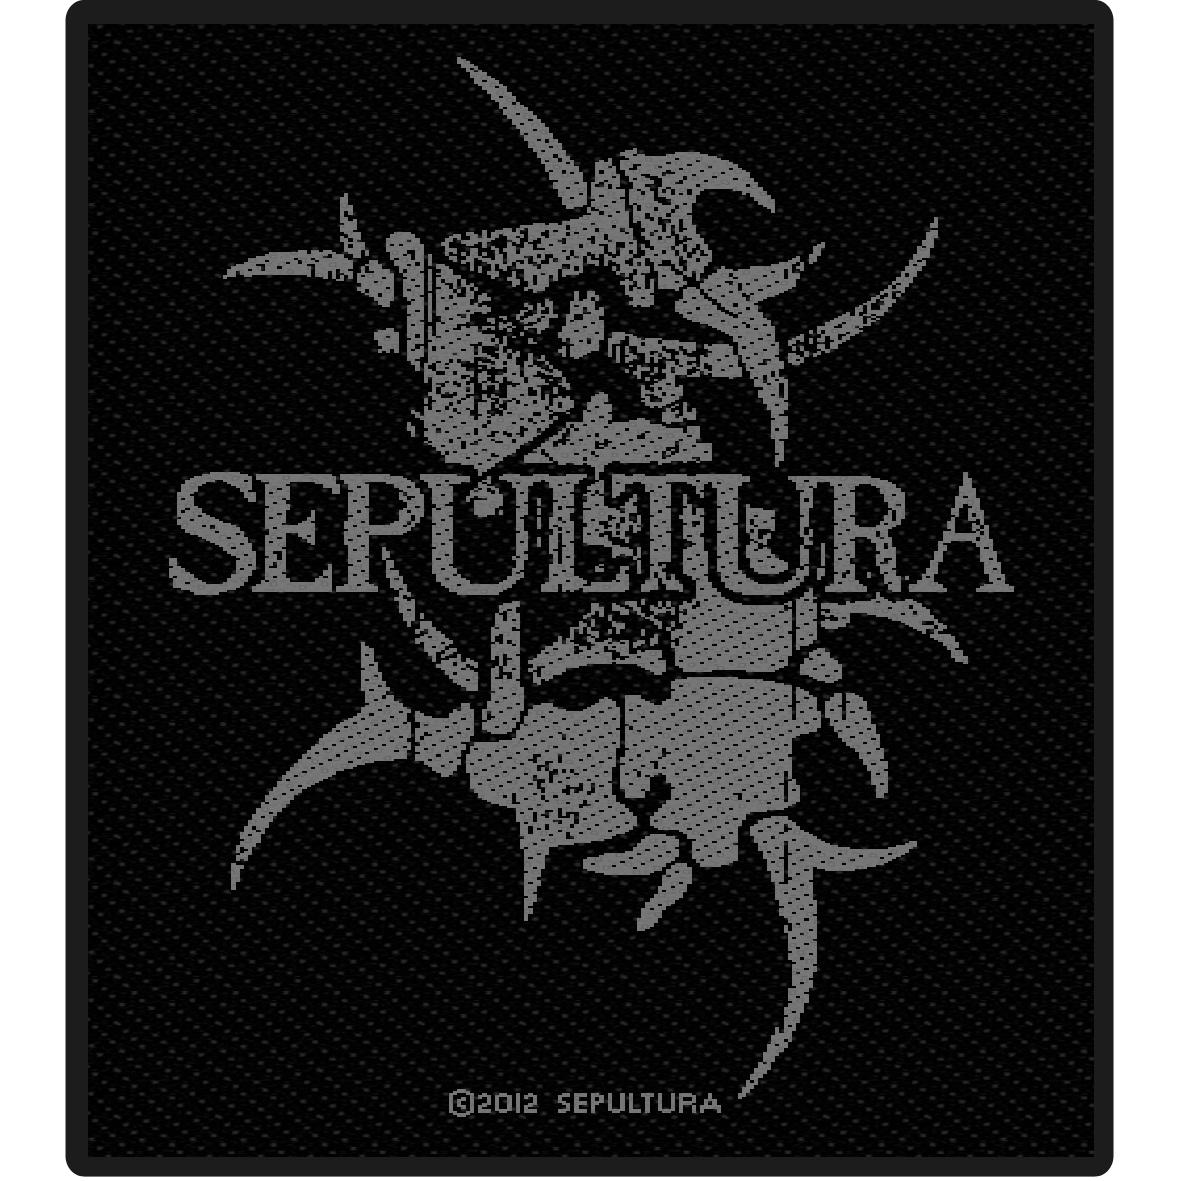 Sepultura Backgrounds, Compatible - PC, Mobile, Gadgets| 1181x1181 px